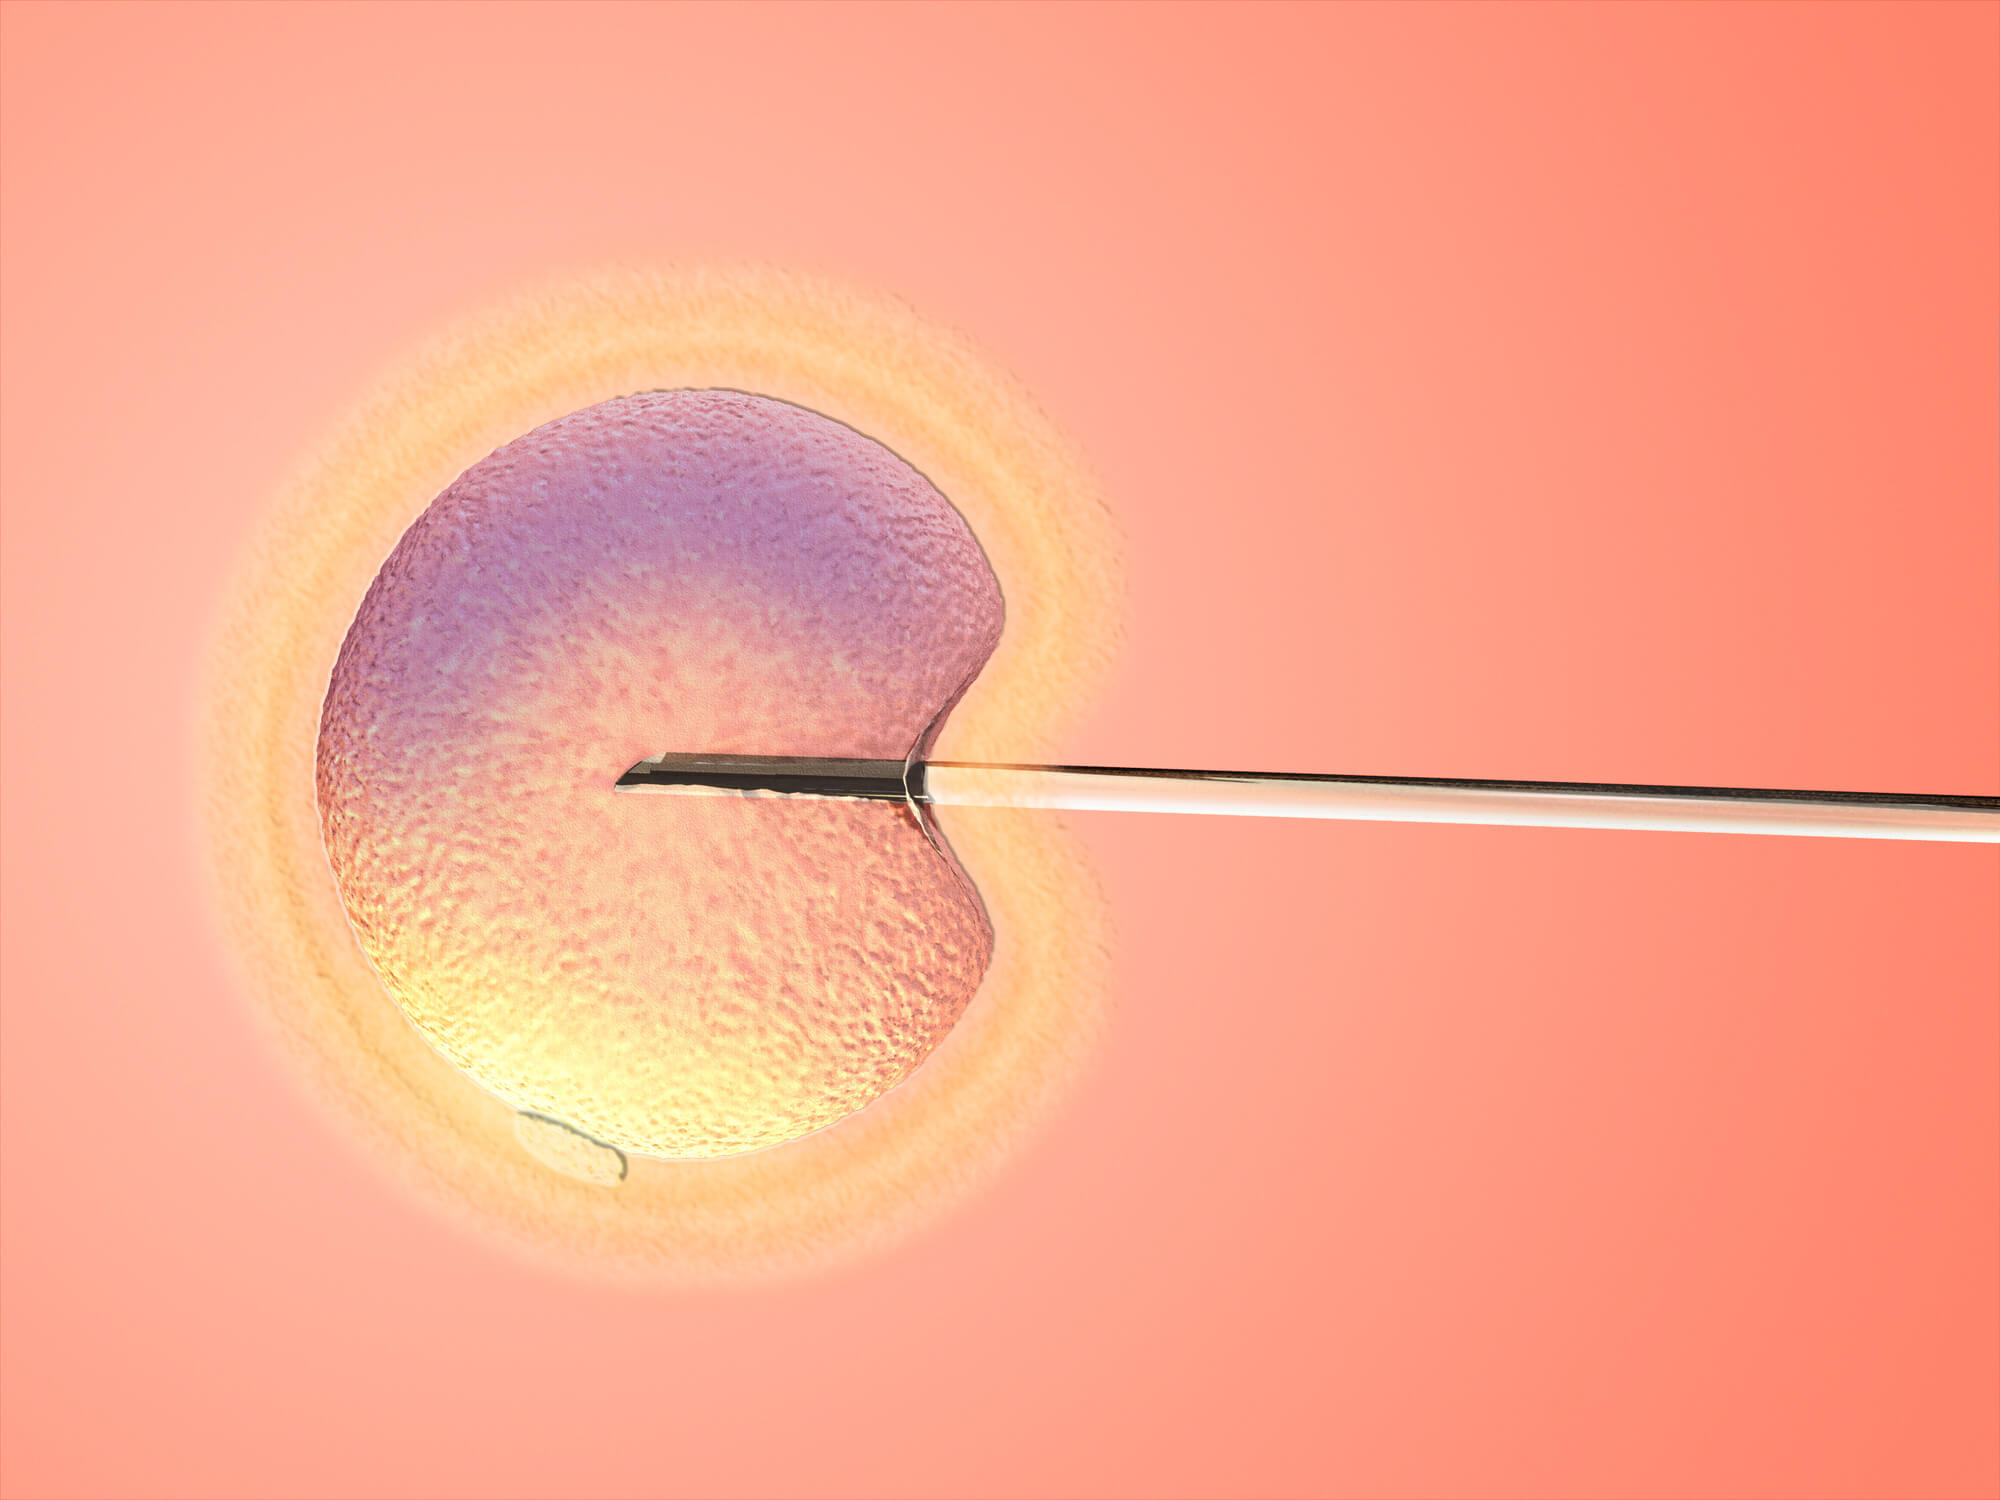 人体受精卵细胞受孕发育全过程医学三维动画视频素材,生物医疗视频素材下载,高清1920X1080视频素材下载,凌点视频素材网,编号:169856